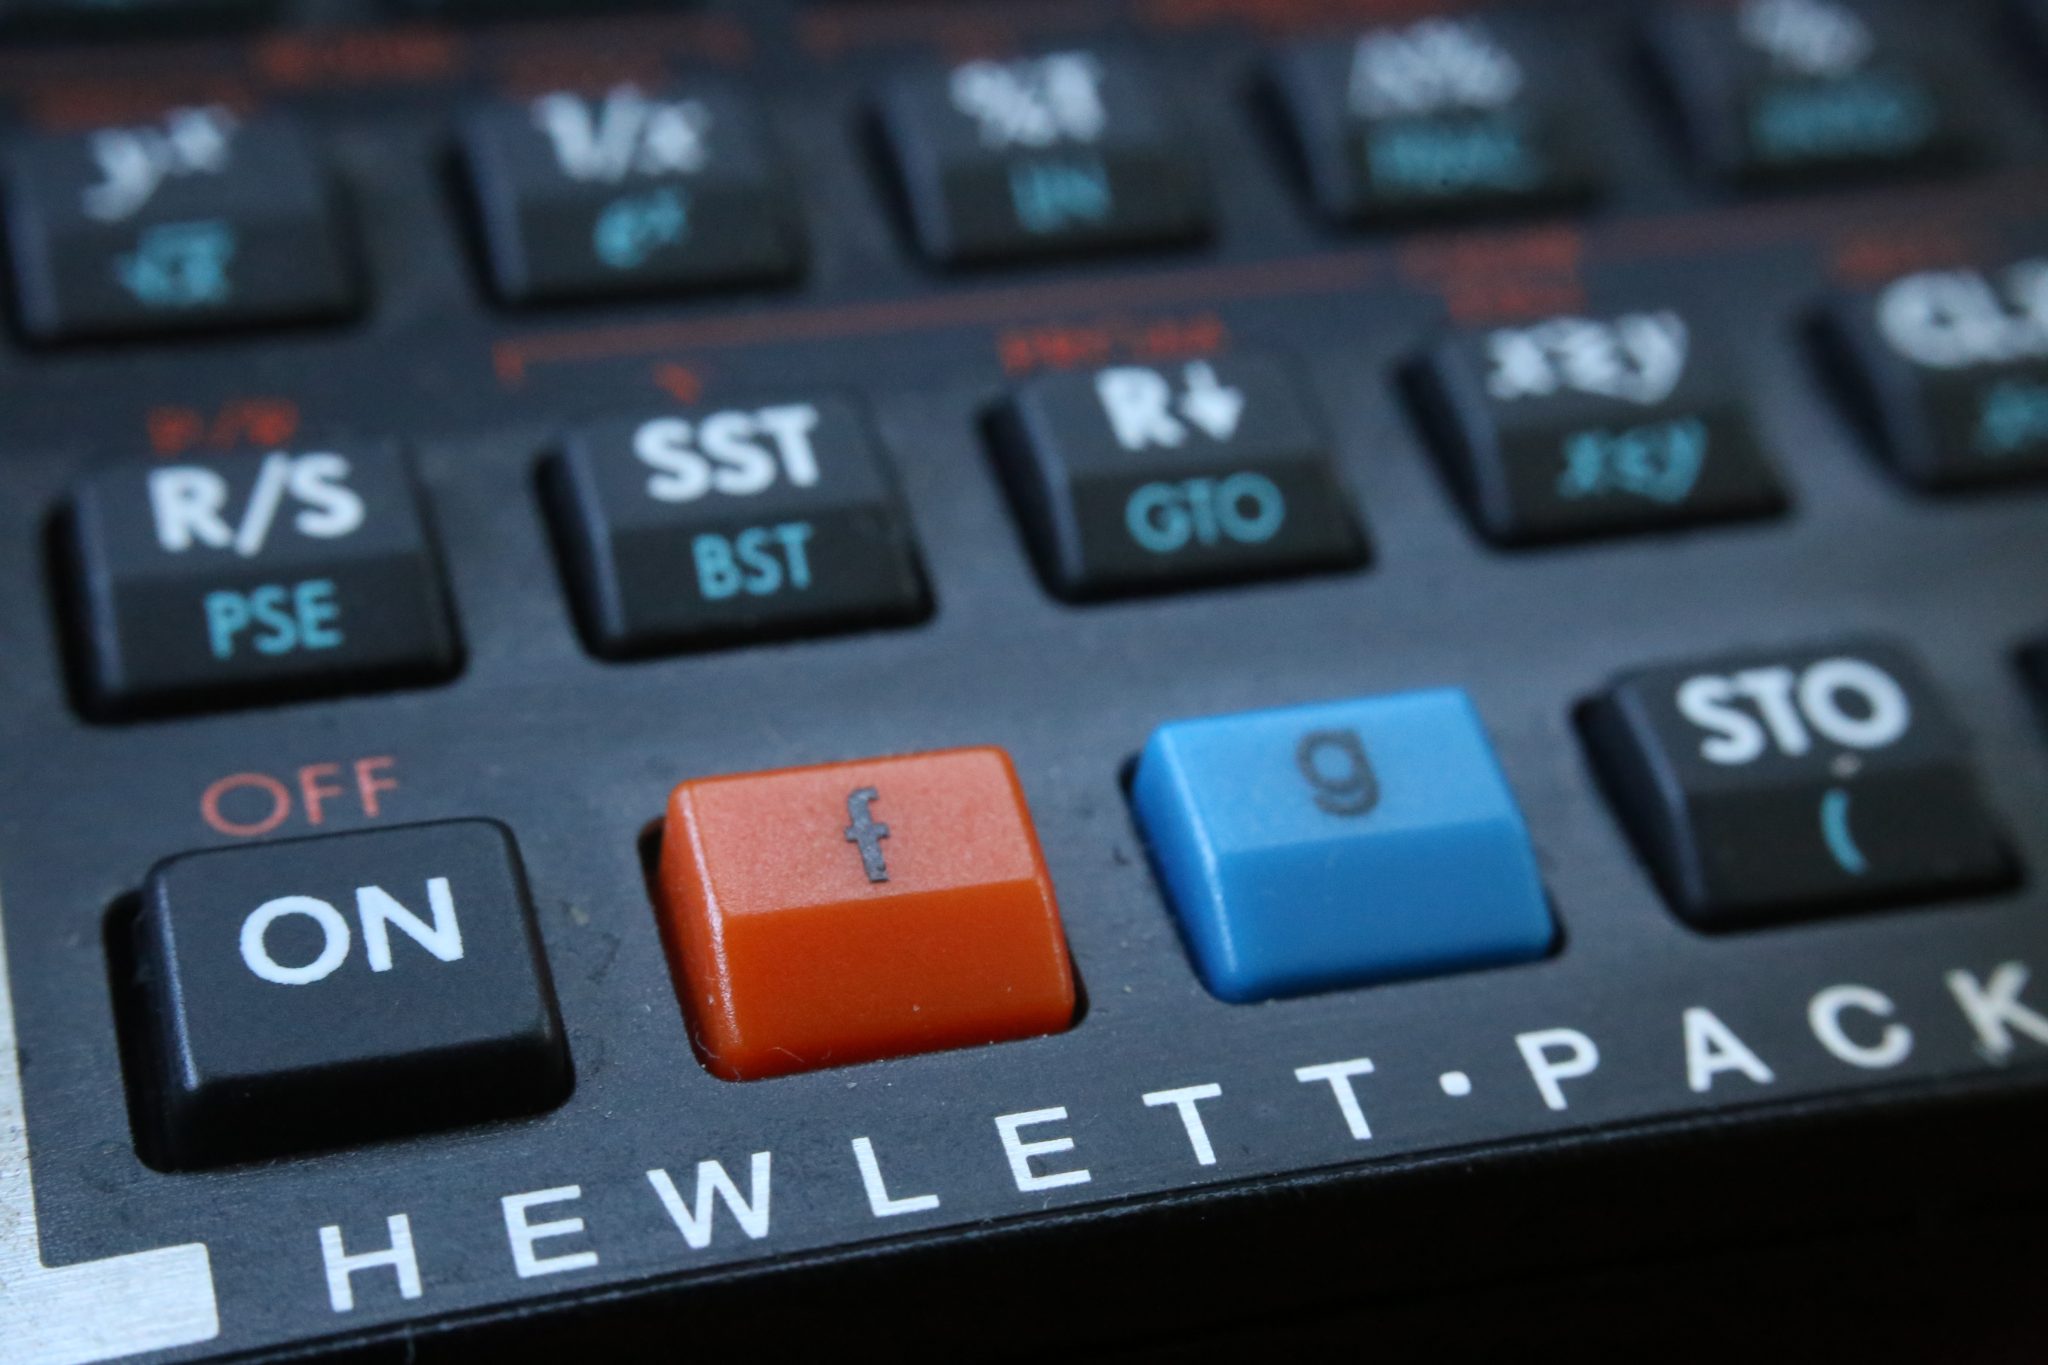 Closeup of ON button from a Hewlett-Packard financial calculator